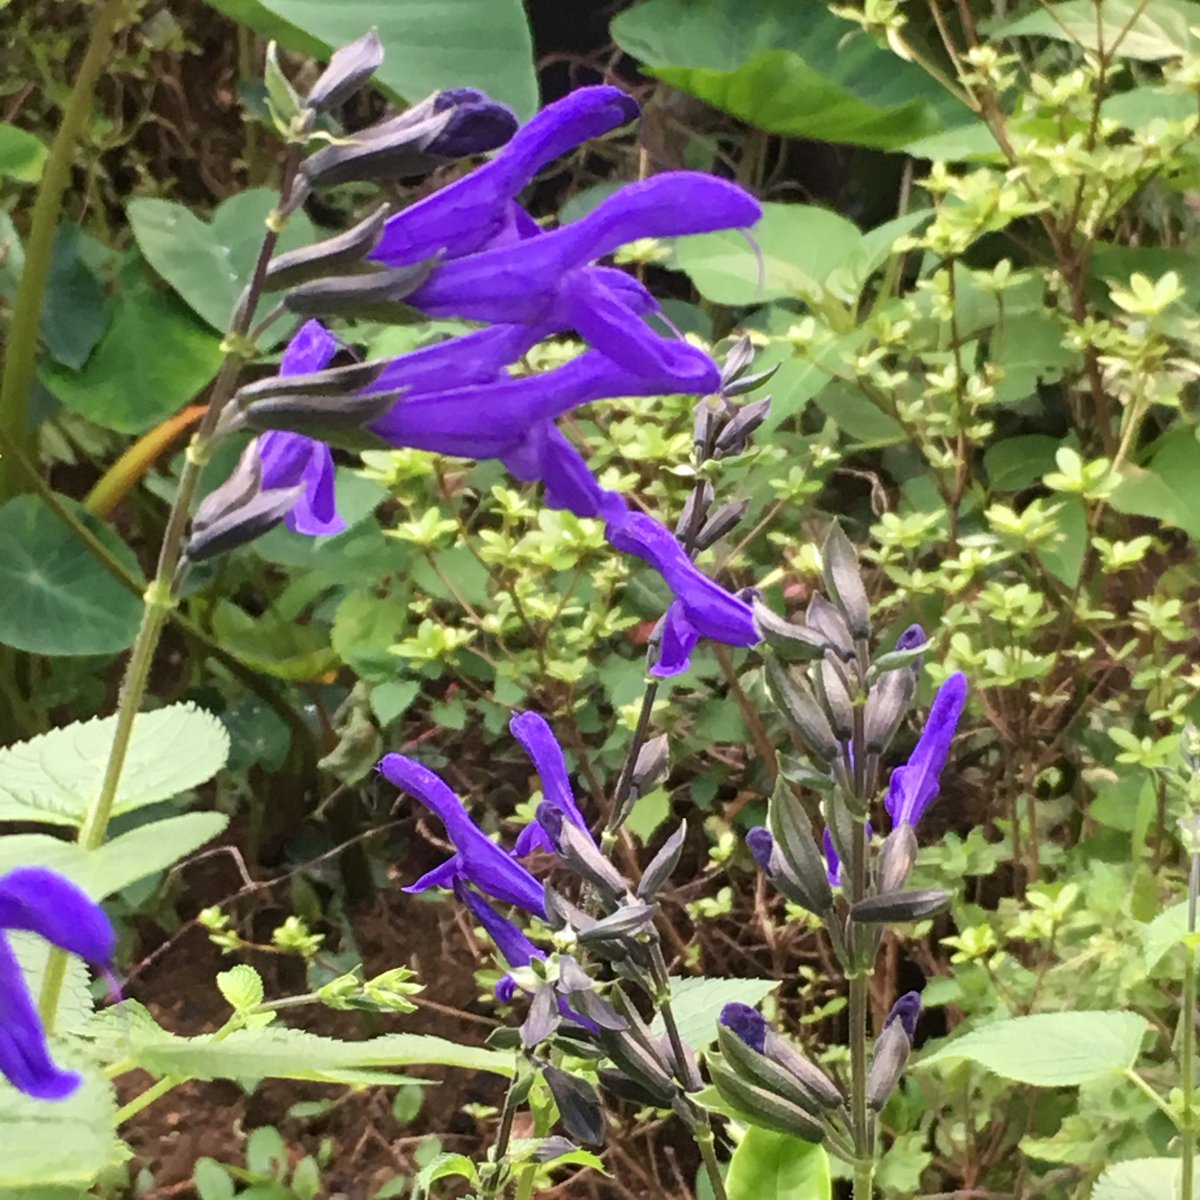 ぎほうさん こみたん No Twitter おはようございます 今朝の花は庭の片隅に 咲いてる紫の花 どうやらハーブ ツンとした 香りを放っています この花はフォロワーさんが メドーセージと教えて くれました 今も色鮮やかに咲いて 緑の中に濃い紫が映えます 花